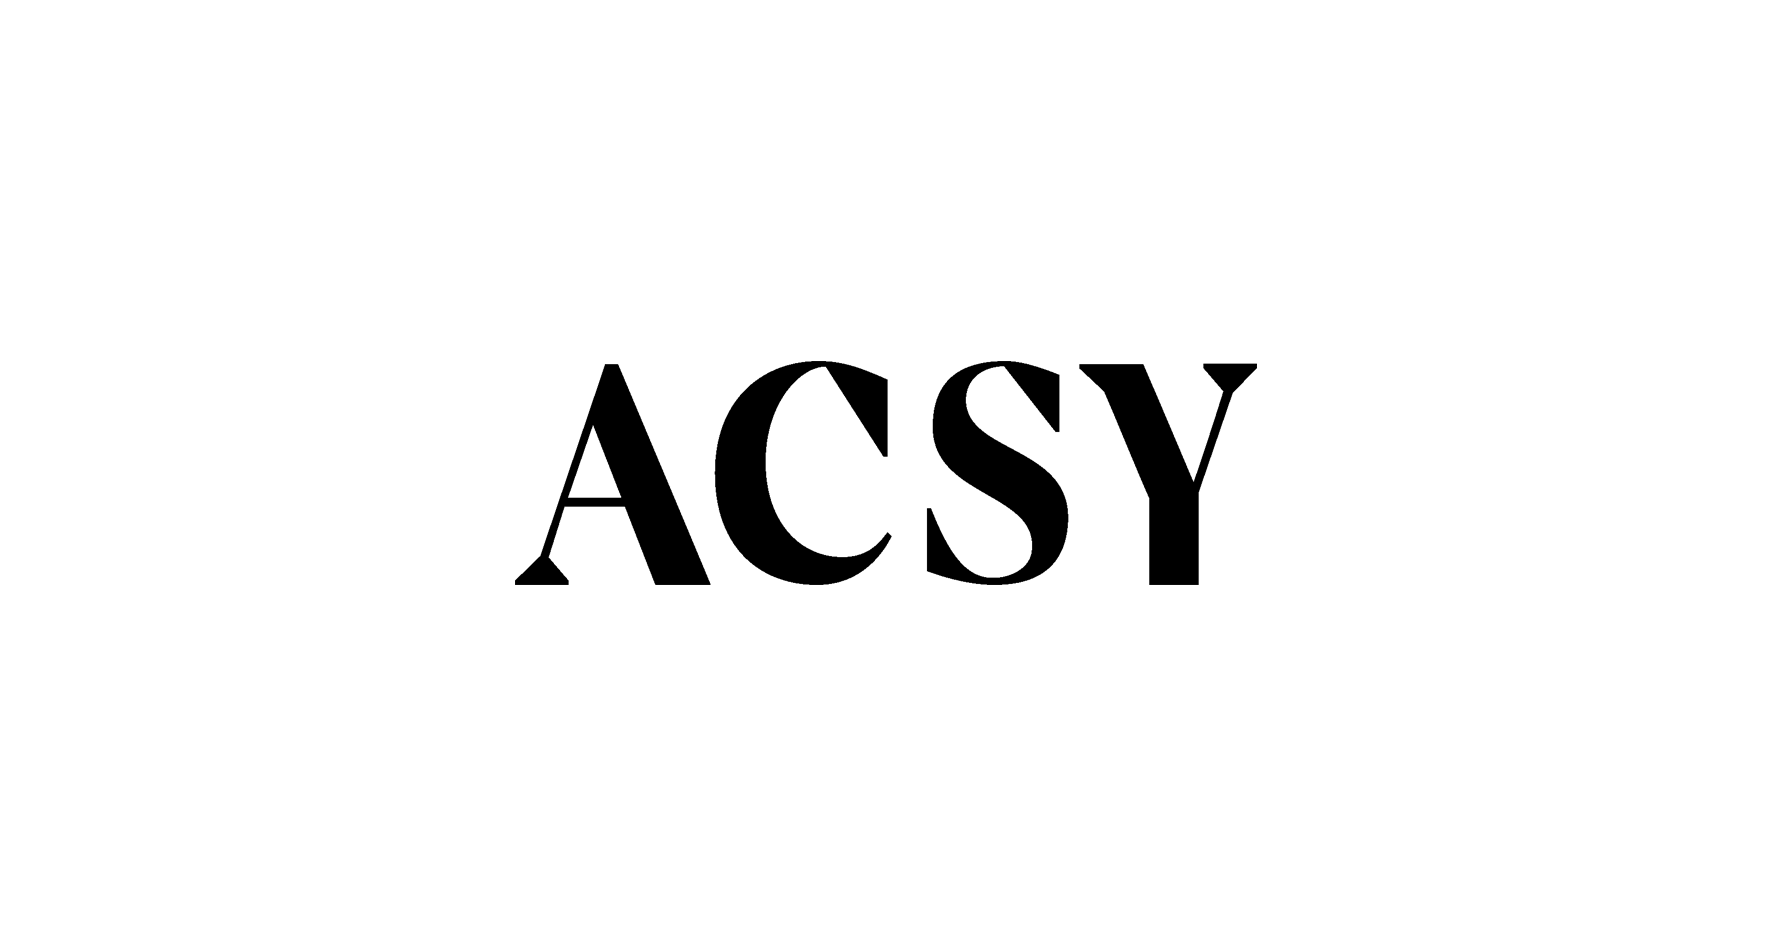 ACSY Одежда и аксессуары, купить онлайн, ACSY в универмаге Bolshoy